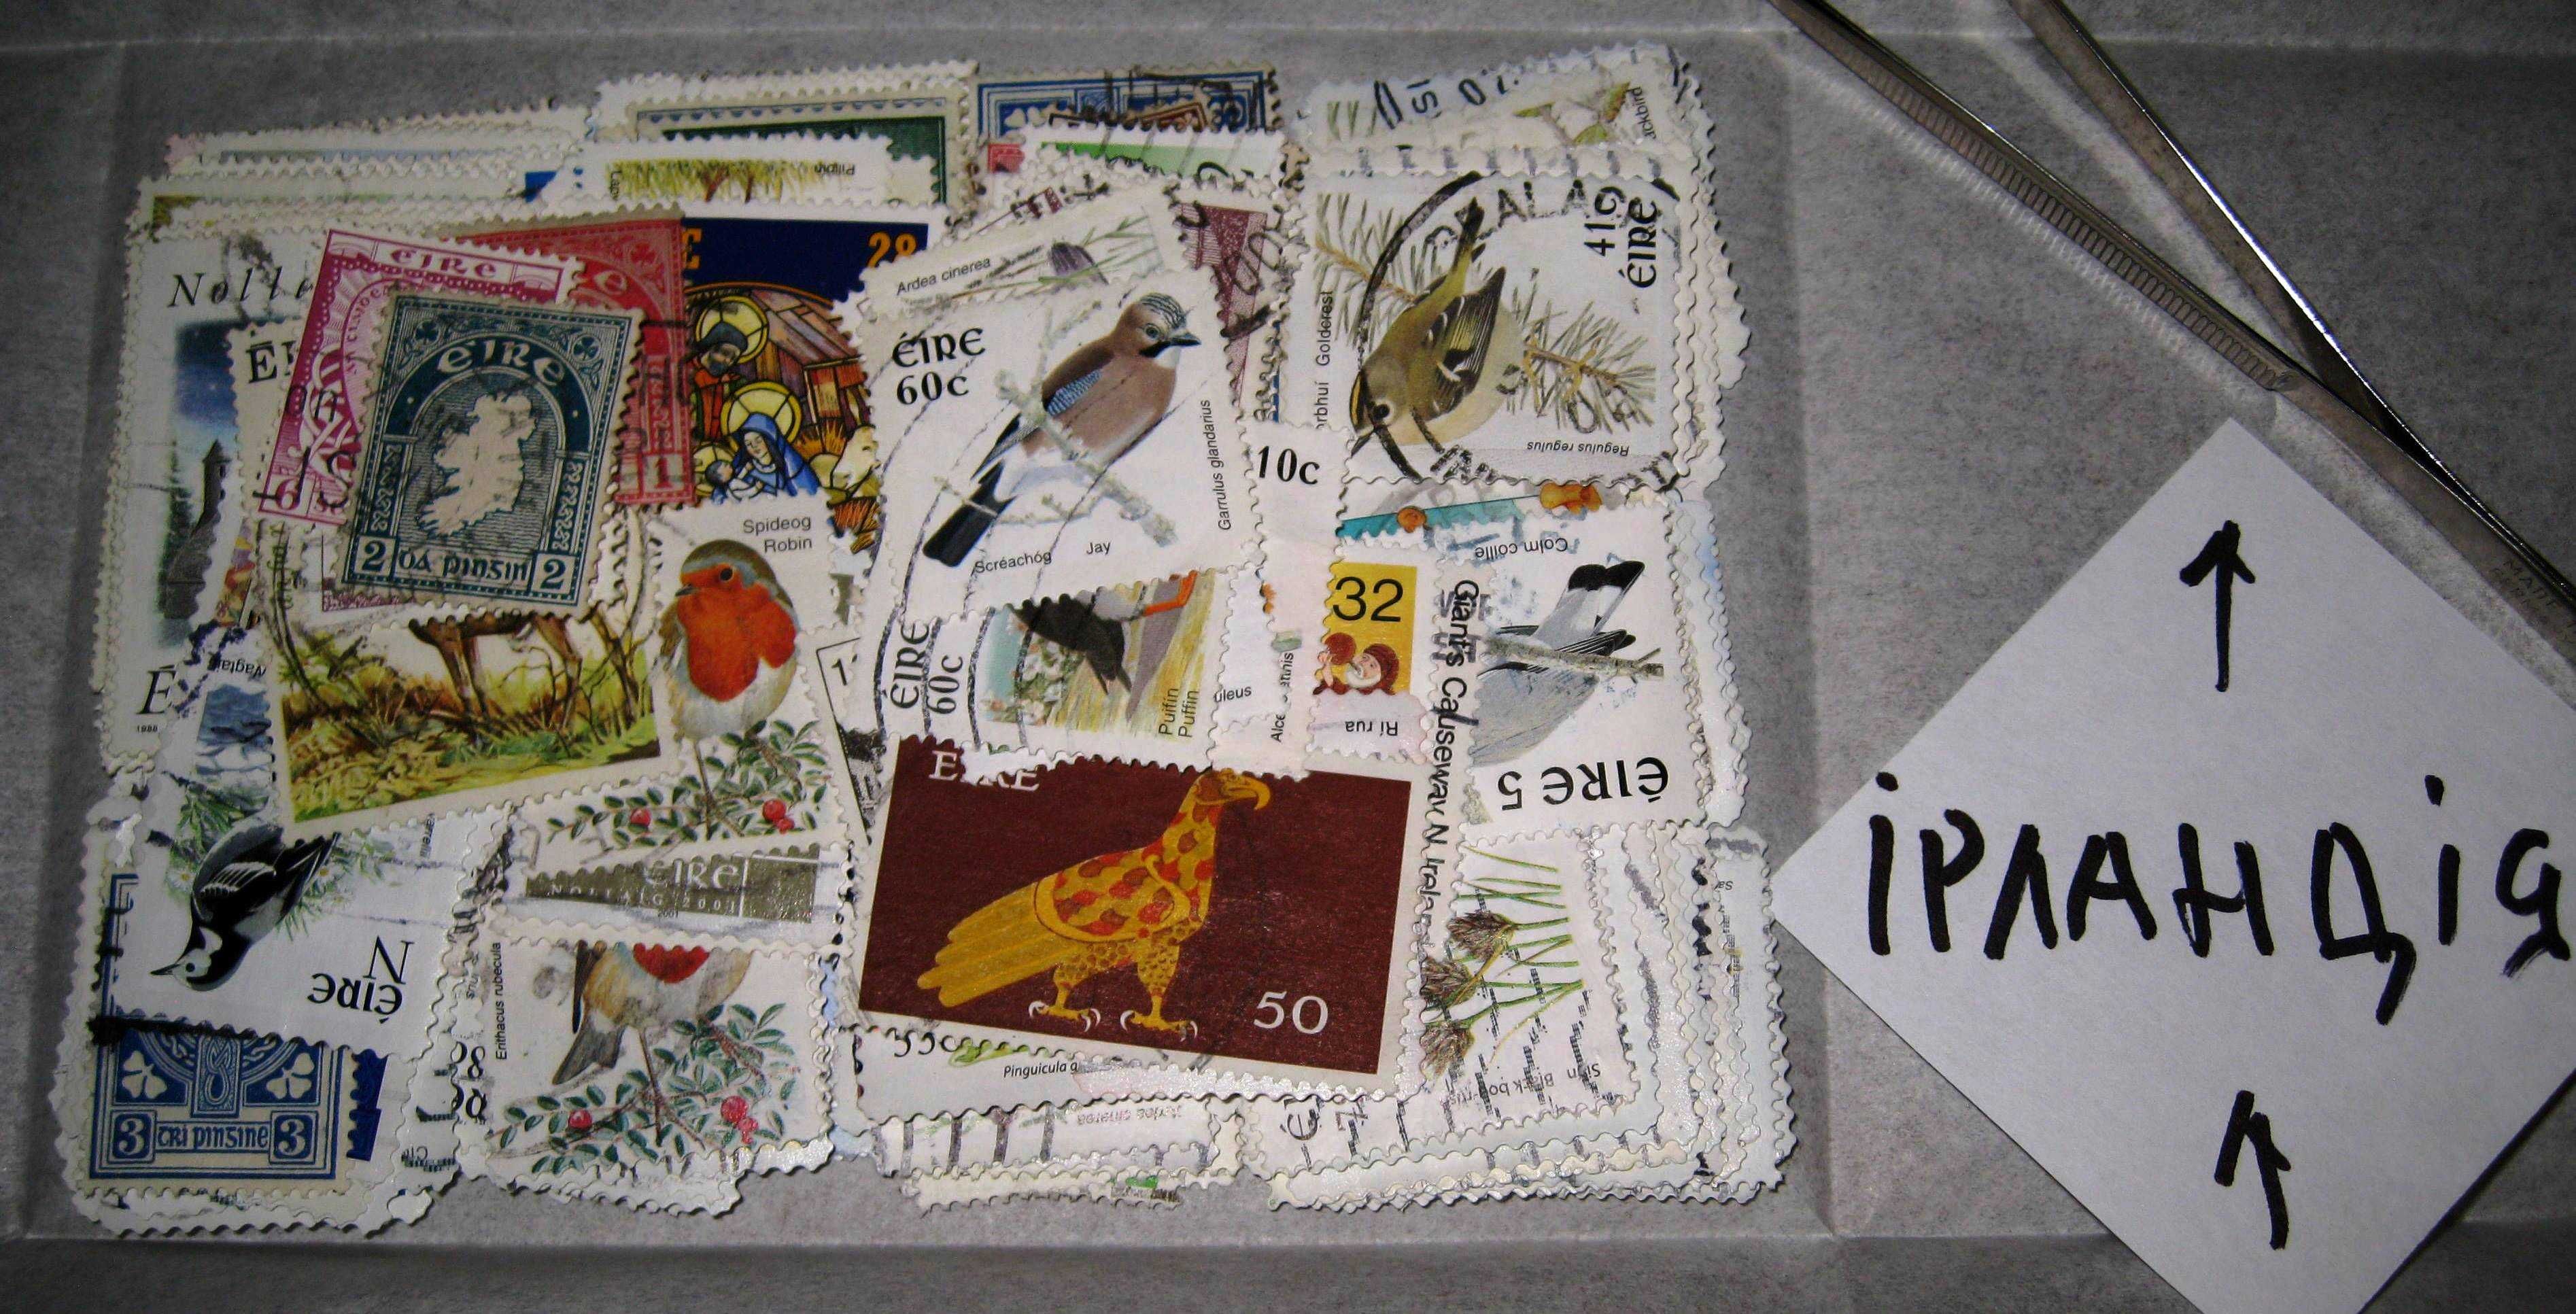 Поштові марки різних країн світу. Несортовані. Ціна від 70 грн